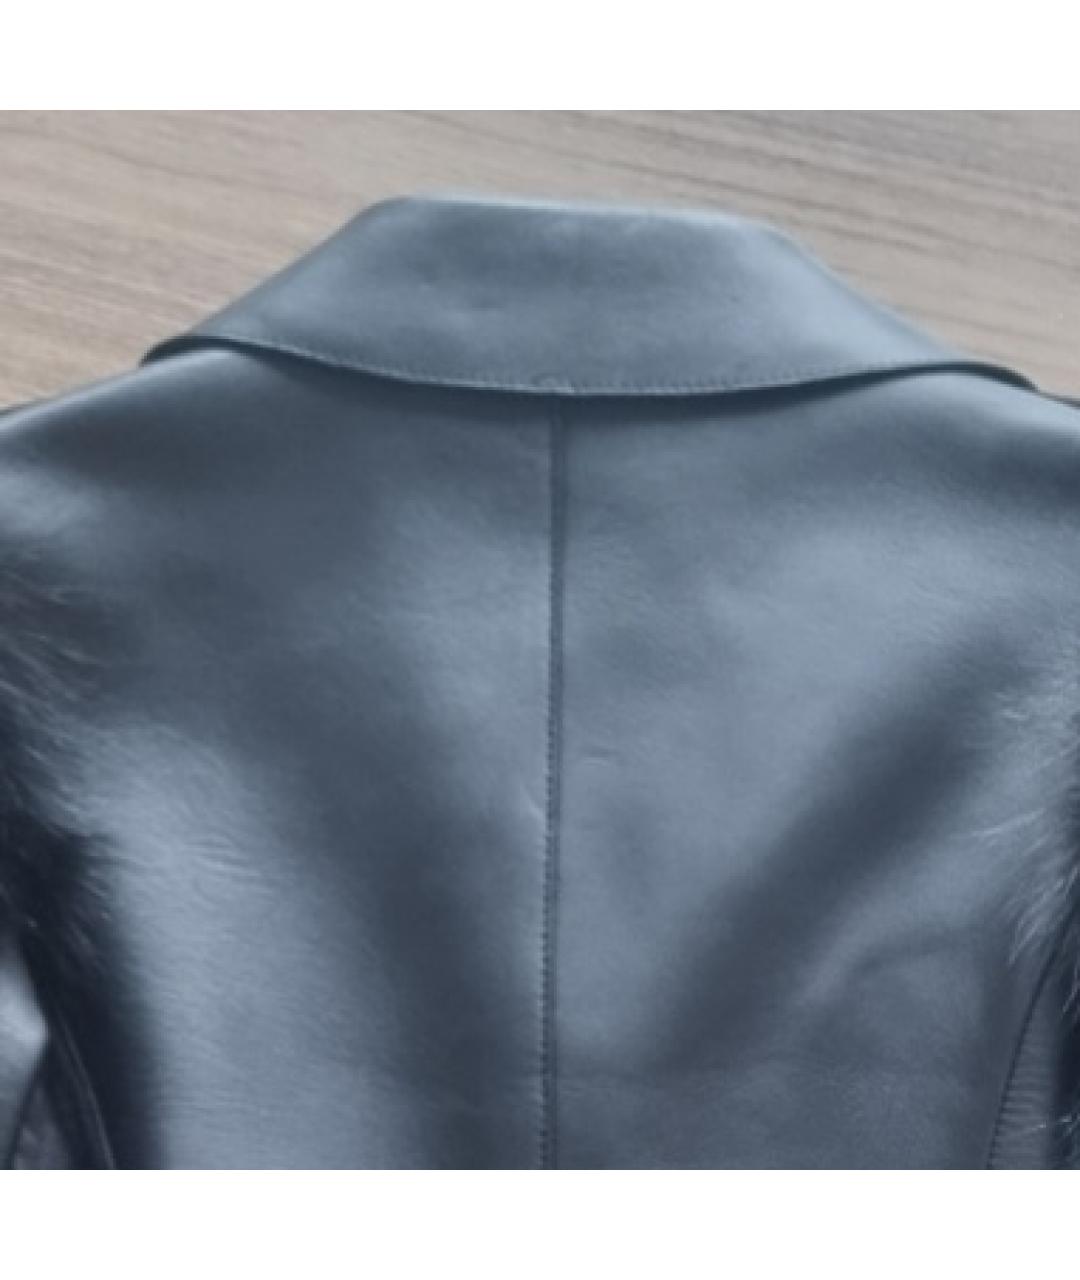 VALENTINO Черная кожаная куртка, фото 3